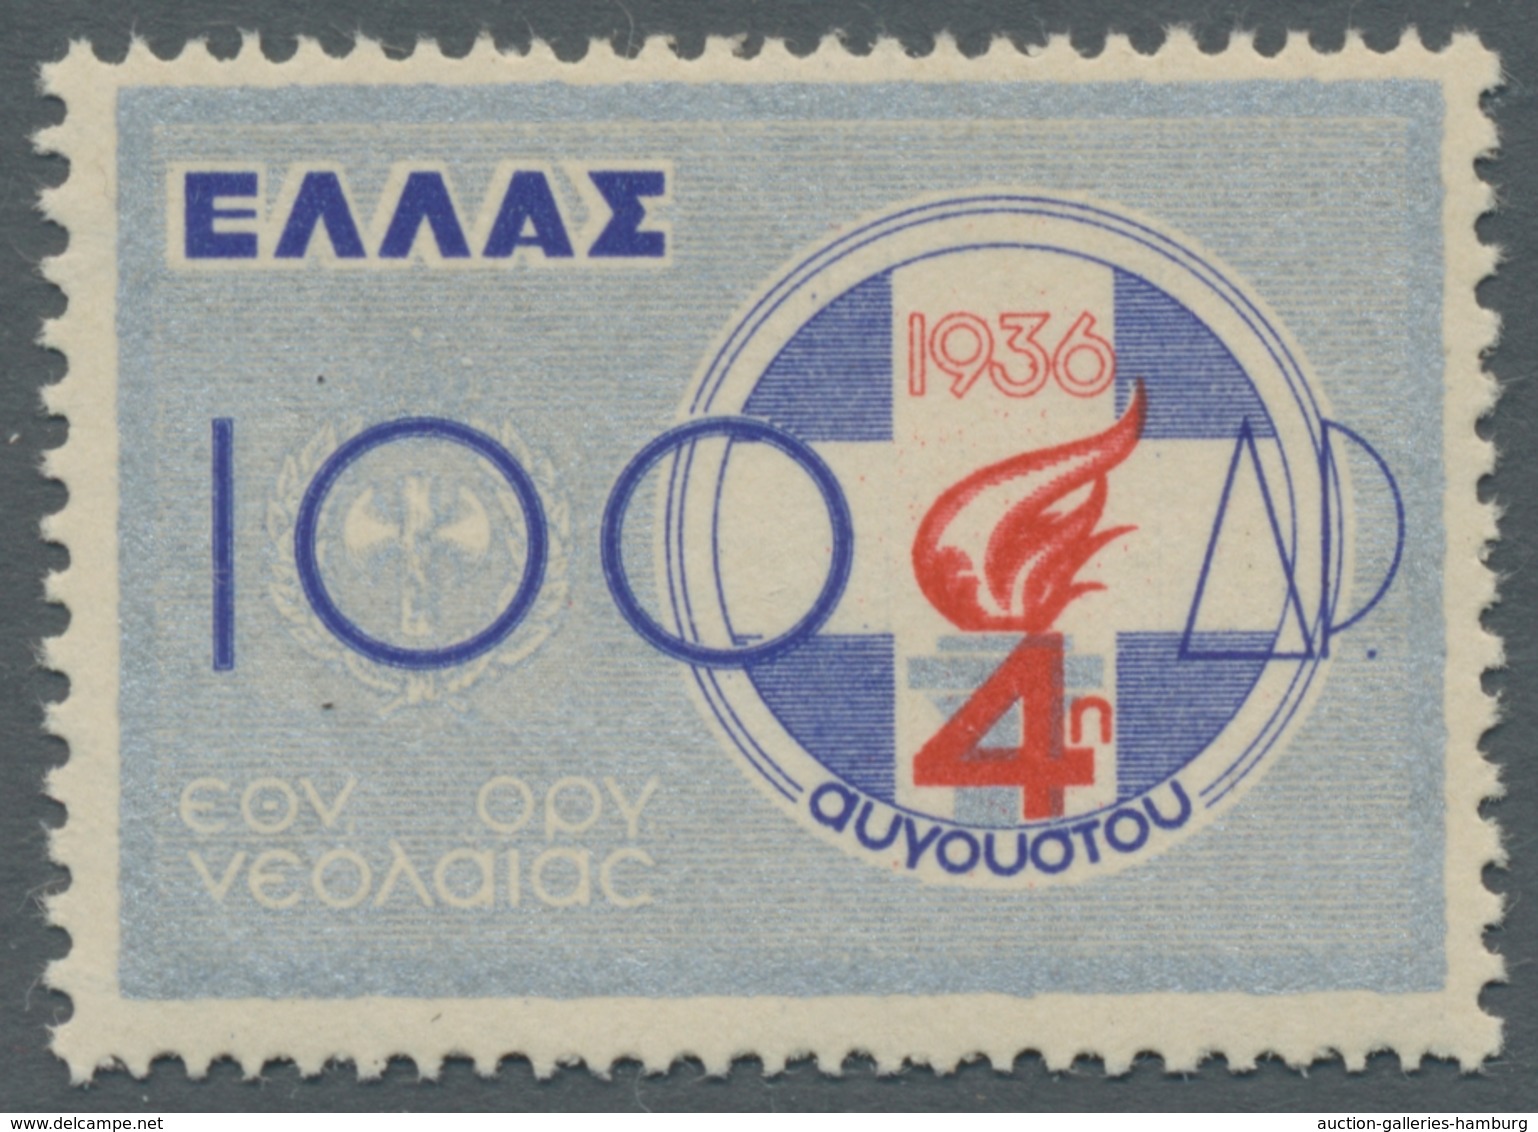 Griechenland: 1861-1979, bessere Sammlung mit nur wenigen Fehlstellen welche in unterschiedlichen Er